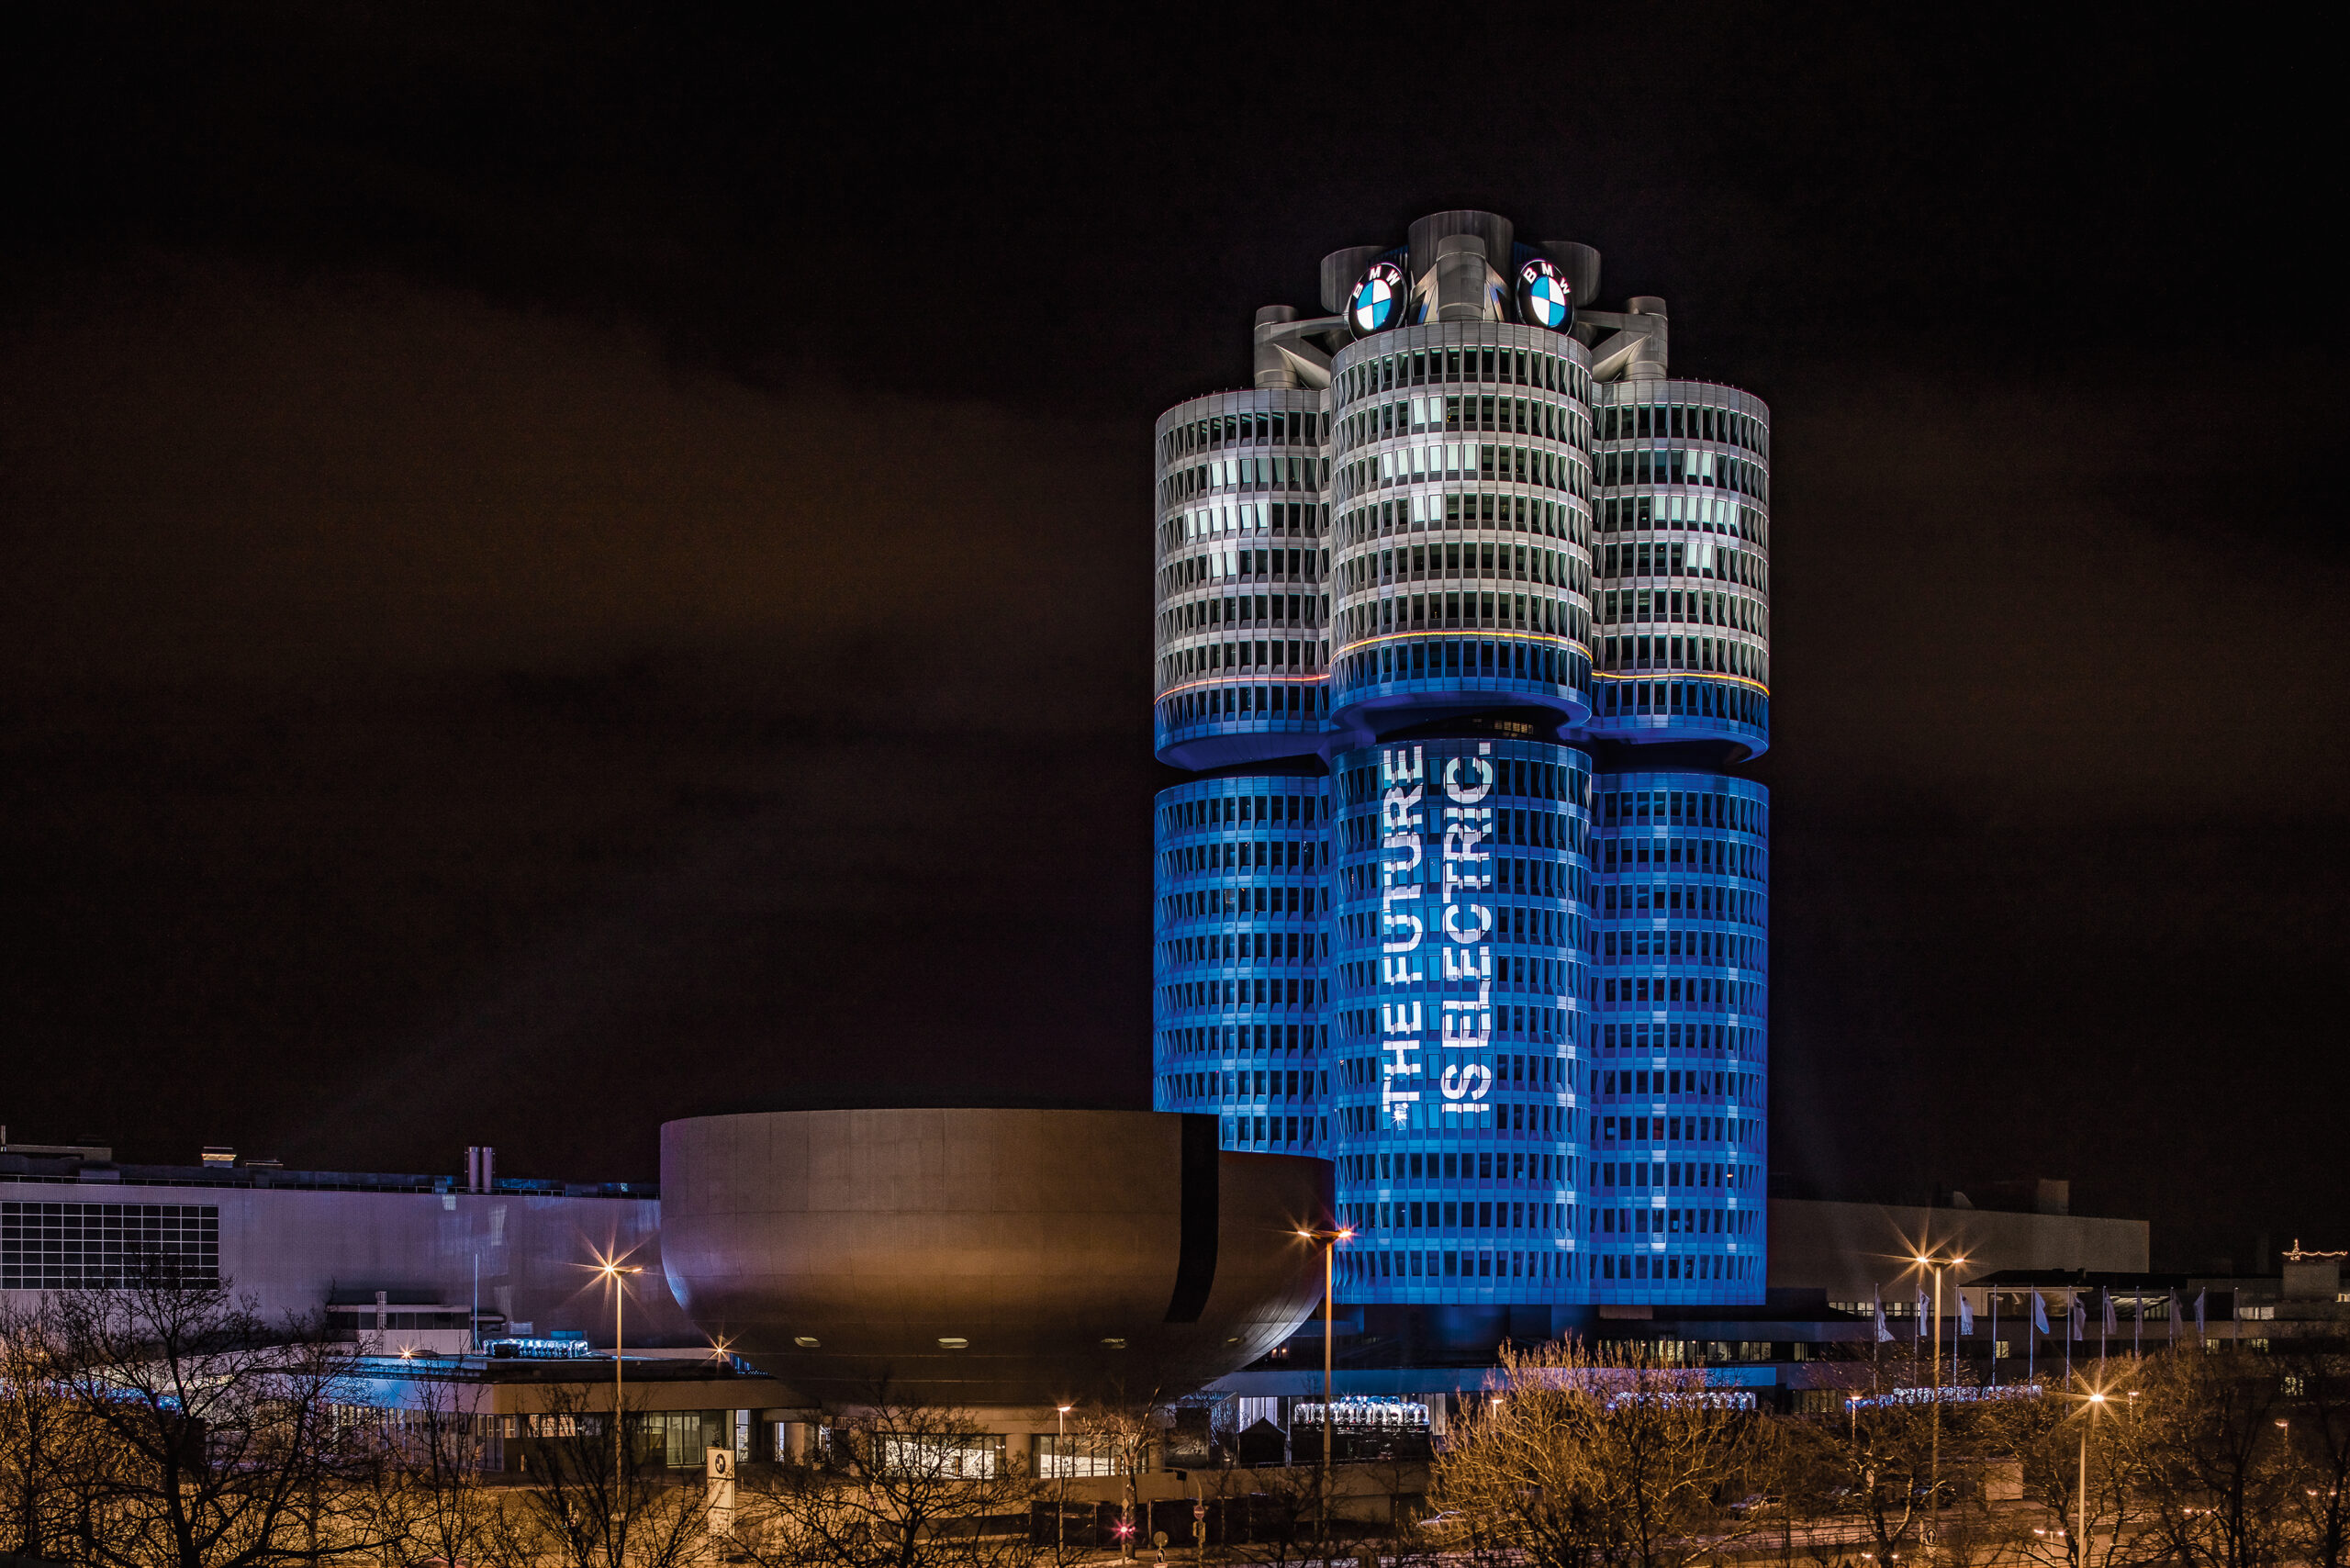  La Sede Corporativa de BMW Group en Múnich, el icónico edificio “Cuatro Cilindros”, celebra su aniversario número 50